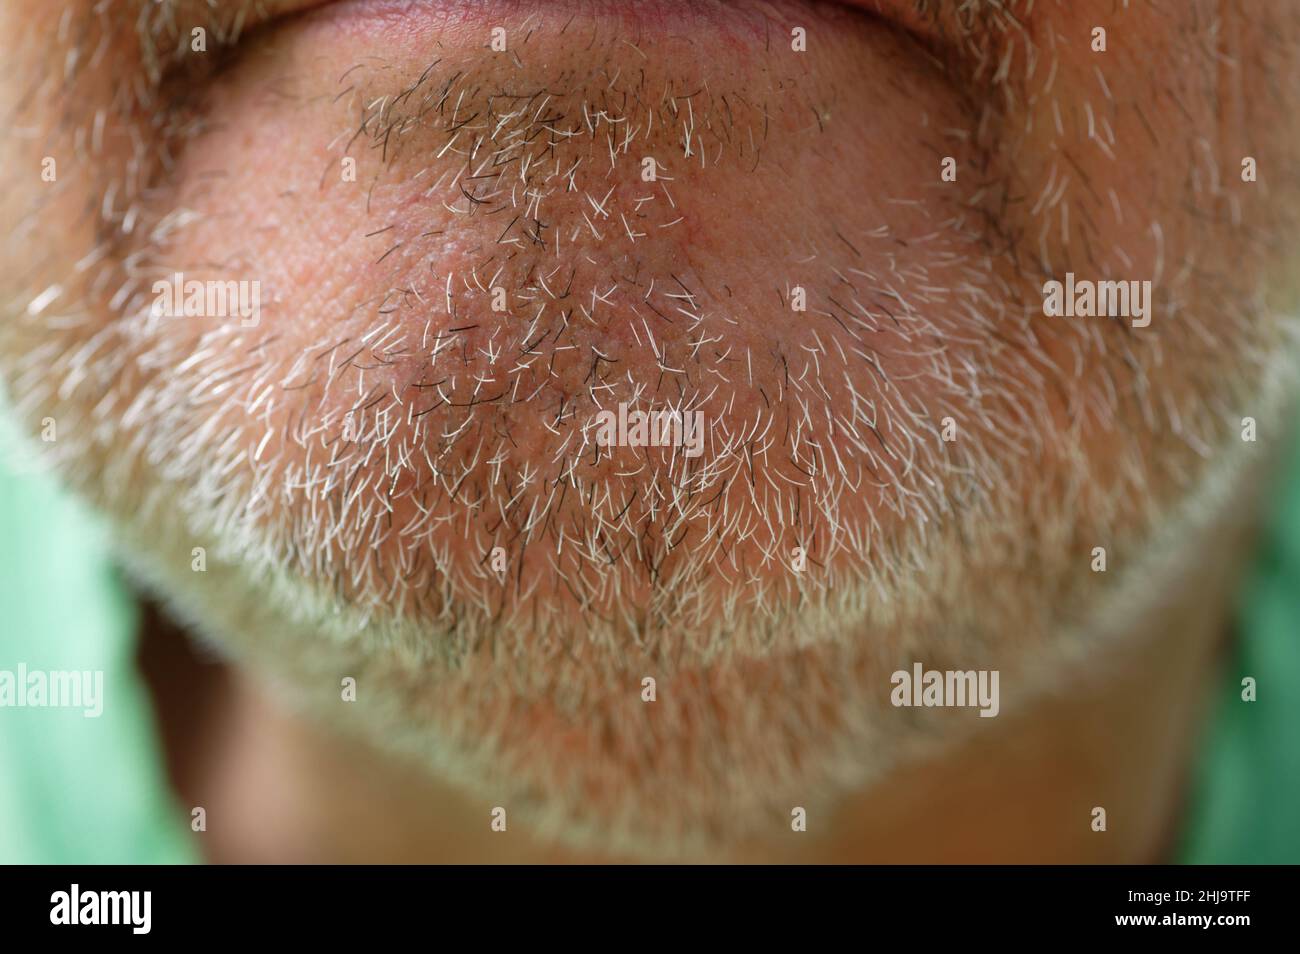 Ein paar Tage Bartwuchs oder Stoppeln sind auf dem Kinn eines Mannes mittleren Alters abgebildet. Stockfoto